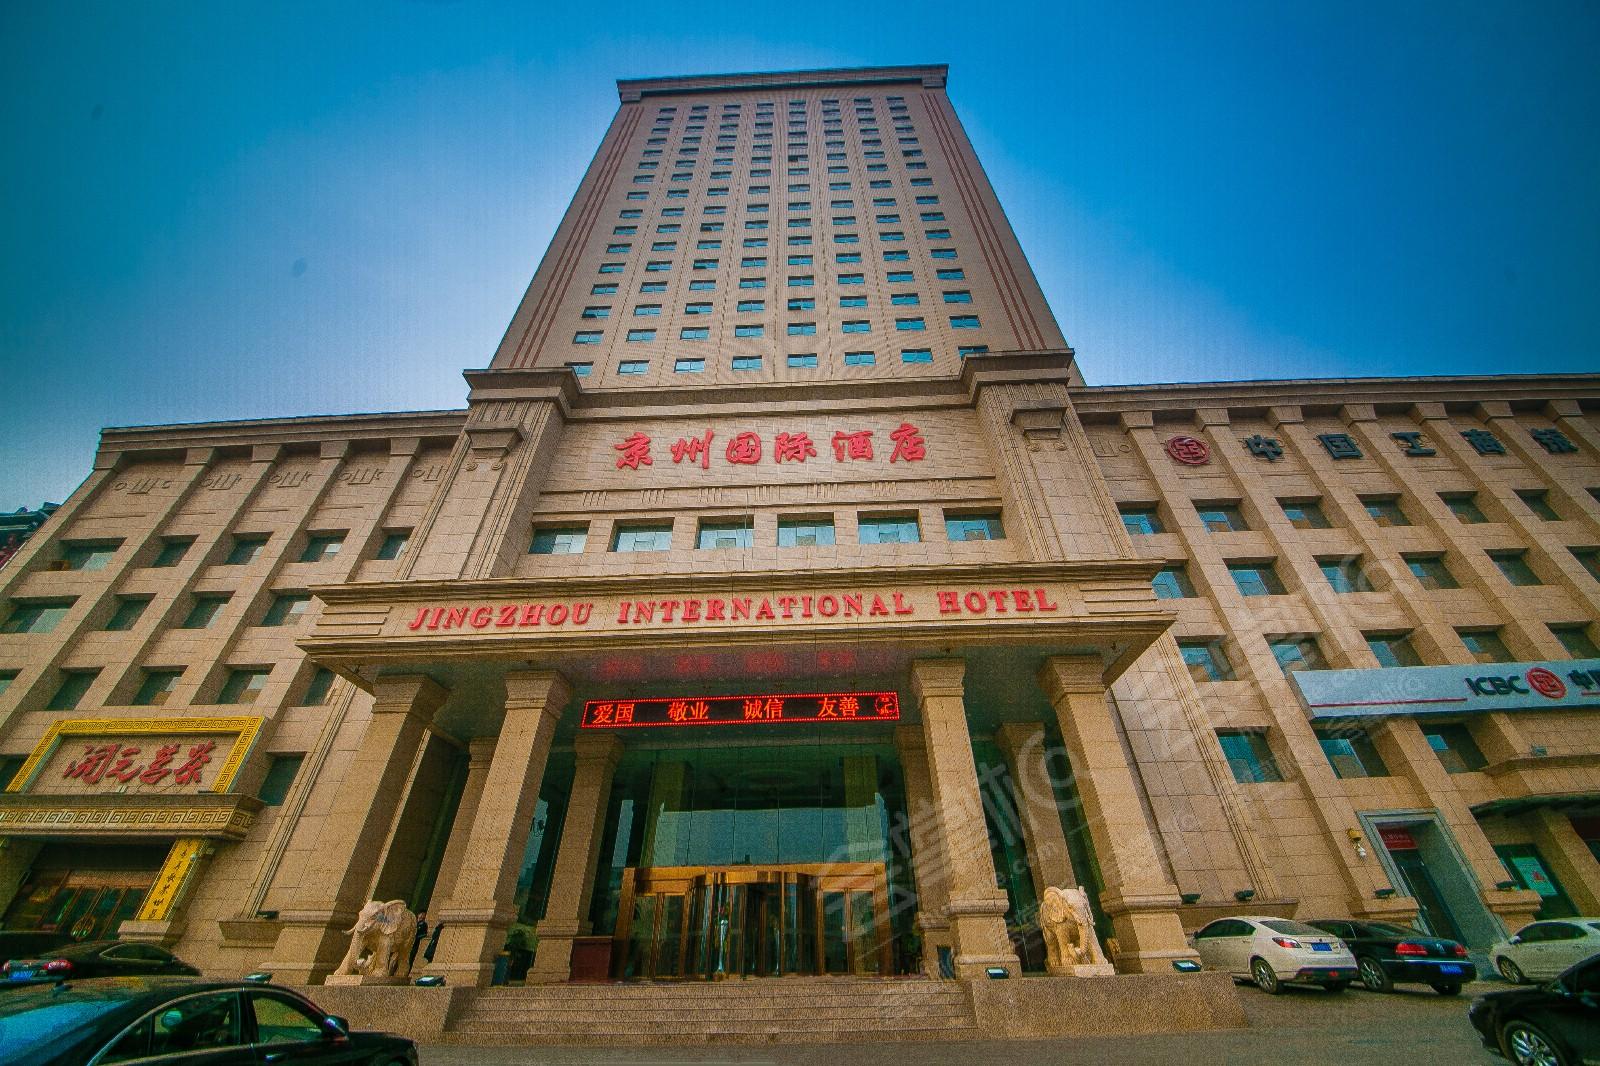 石家庄四星级酒店最大容纳600人的会议场地|石家庄京州国际酒店的价格与联系方式